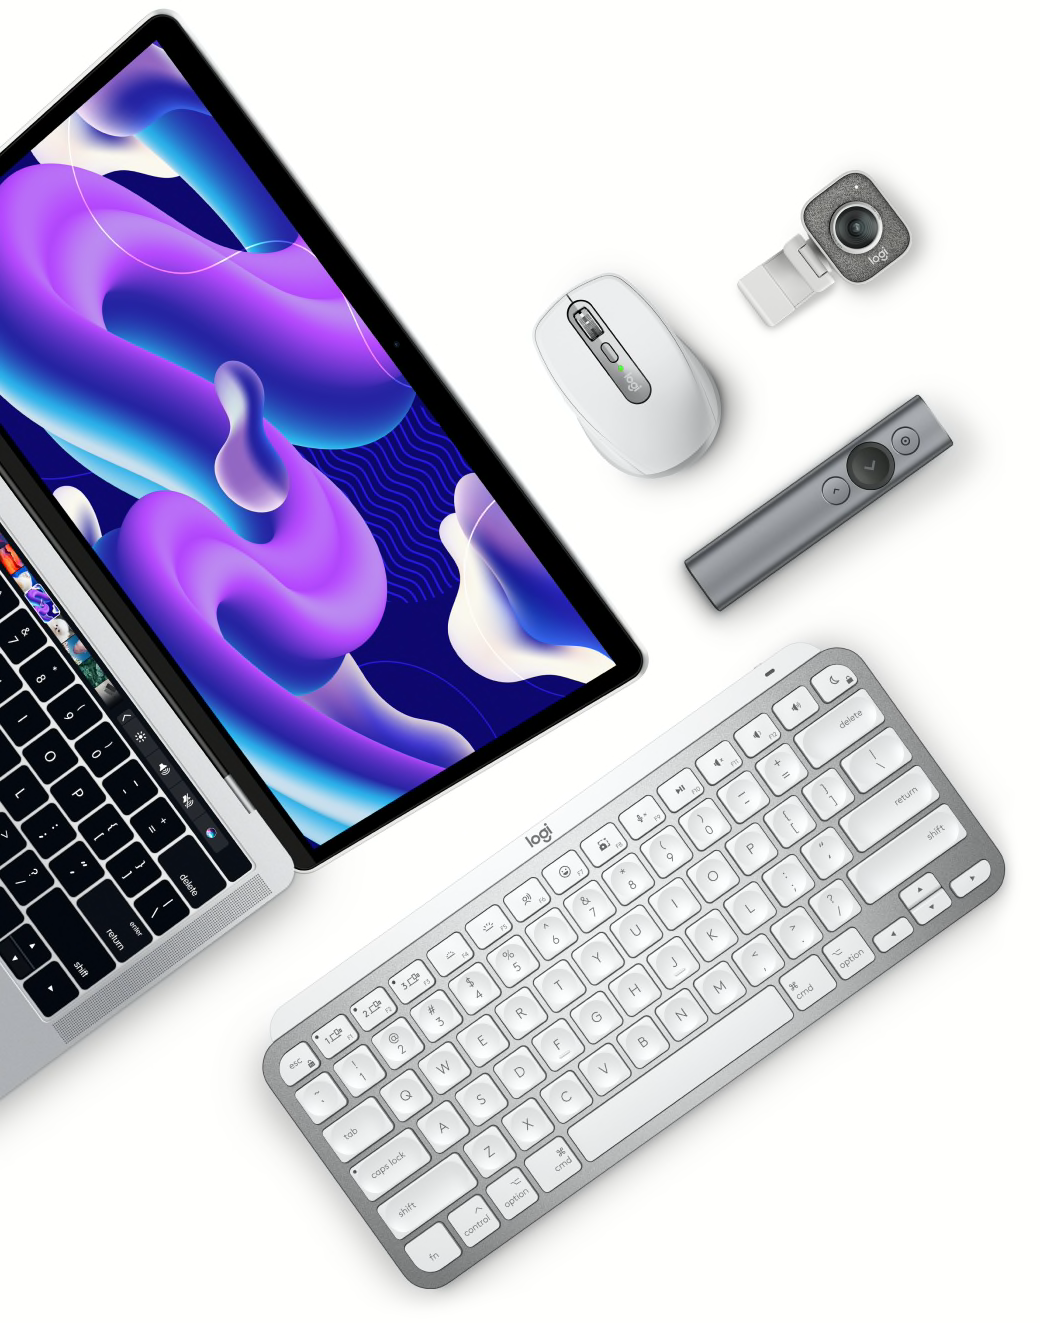 iPad Pro, MacBook Pro, MacBook Air : quels sont les accessoires